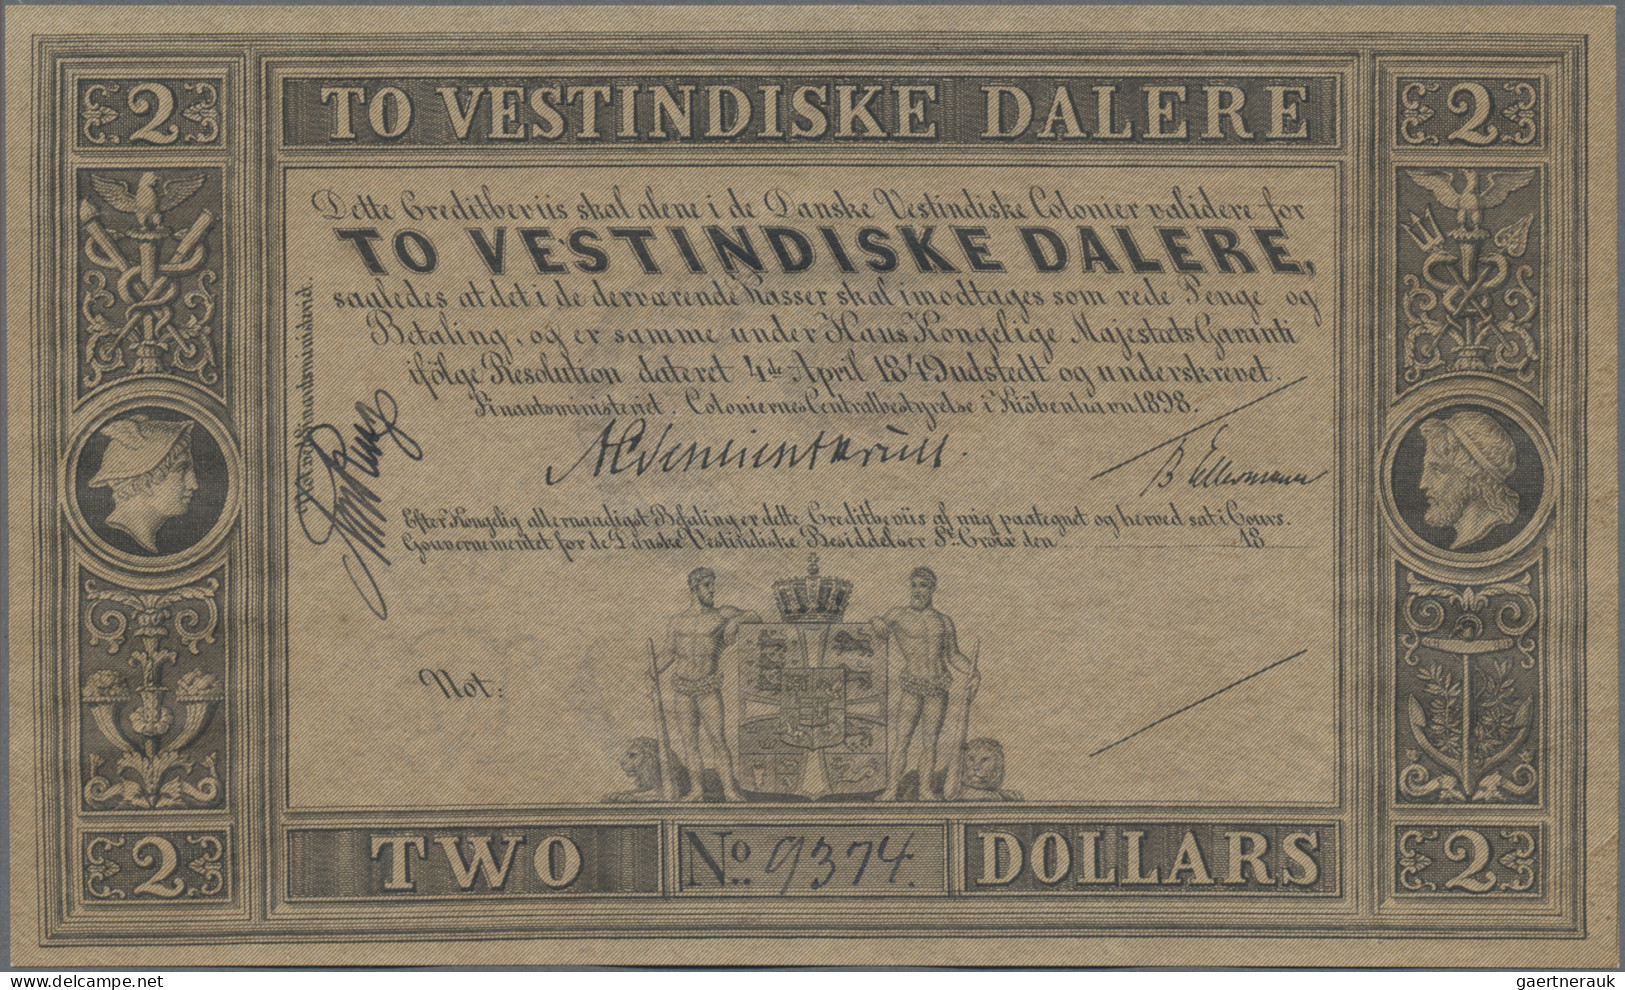 Danish West Indies: State Treasury, 2 Vestindiske Dalere / Dollars L. 04.04.1849 - Denmark